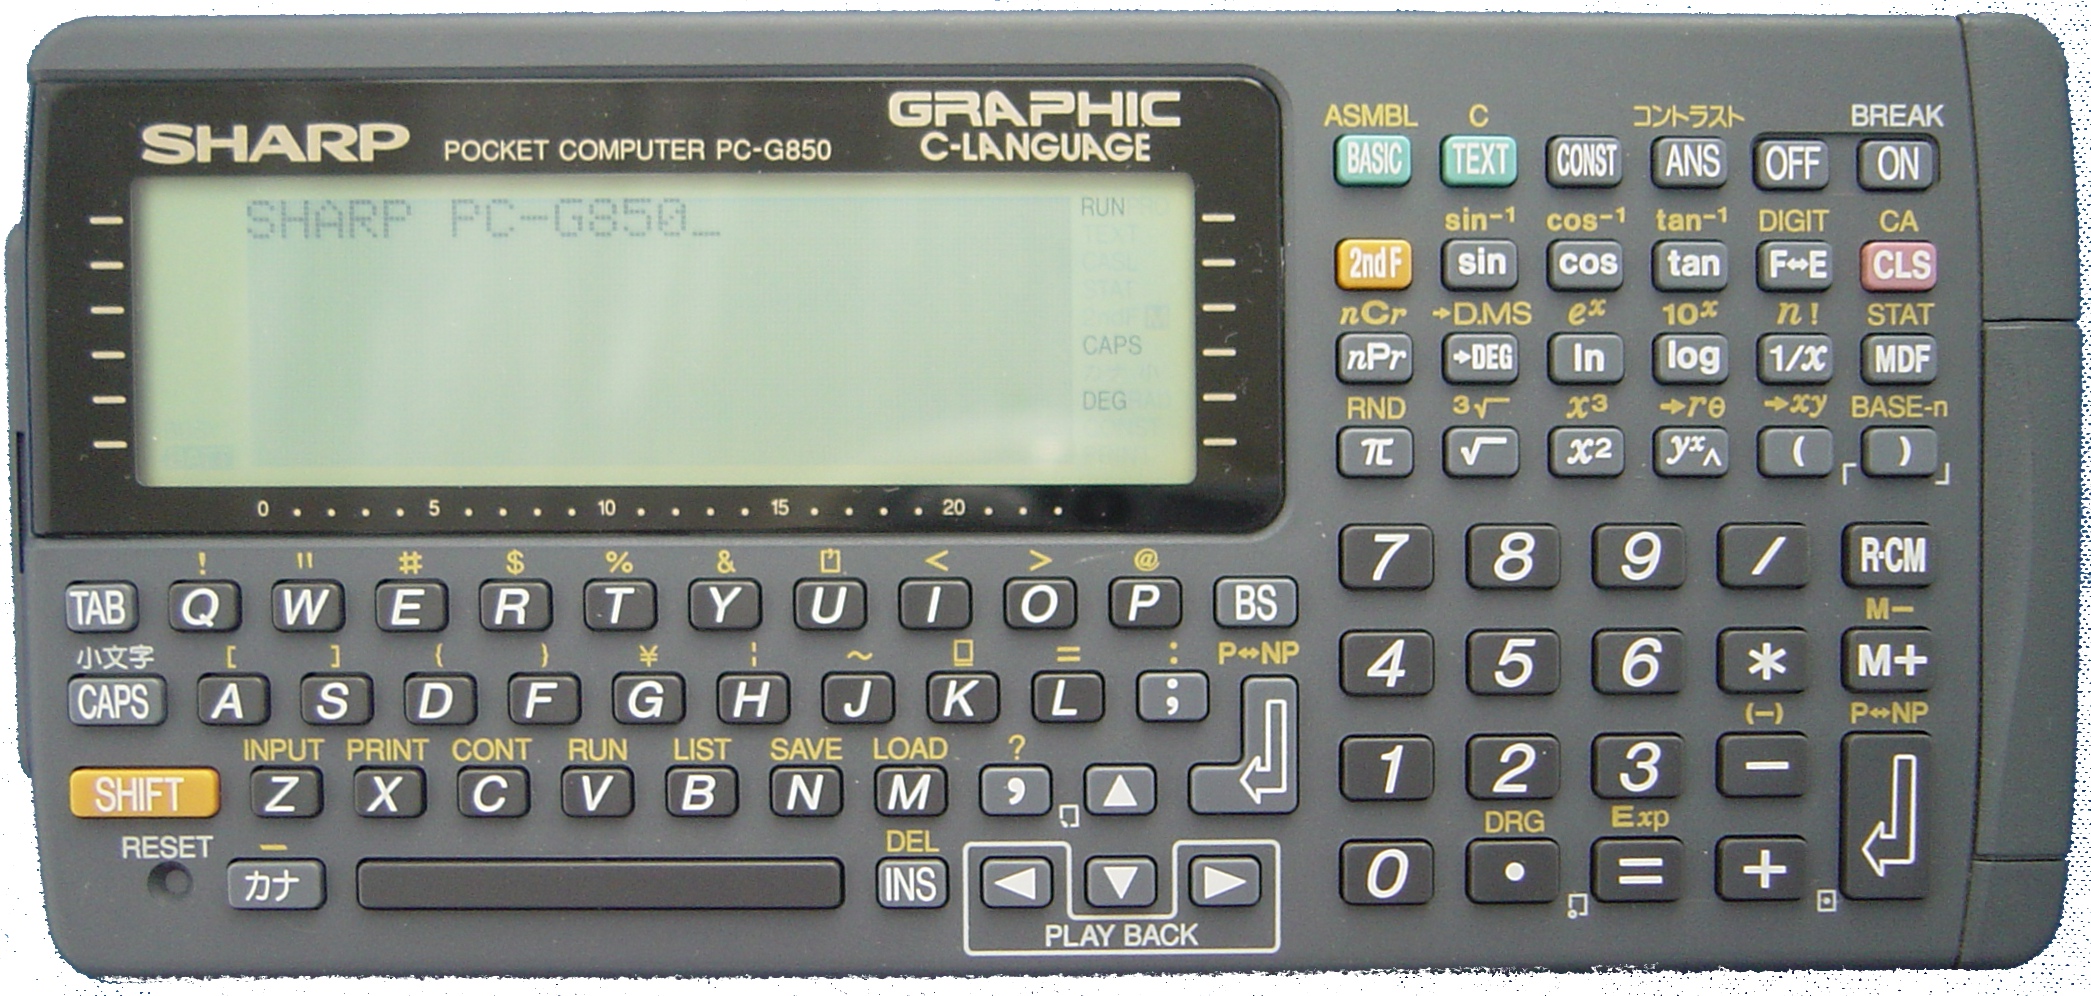 SHARP ポケットコンピュータ PC-G850VS製品特長仕様